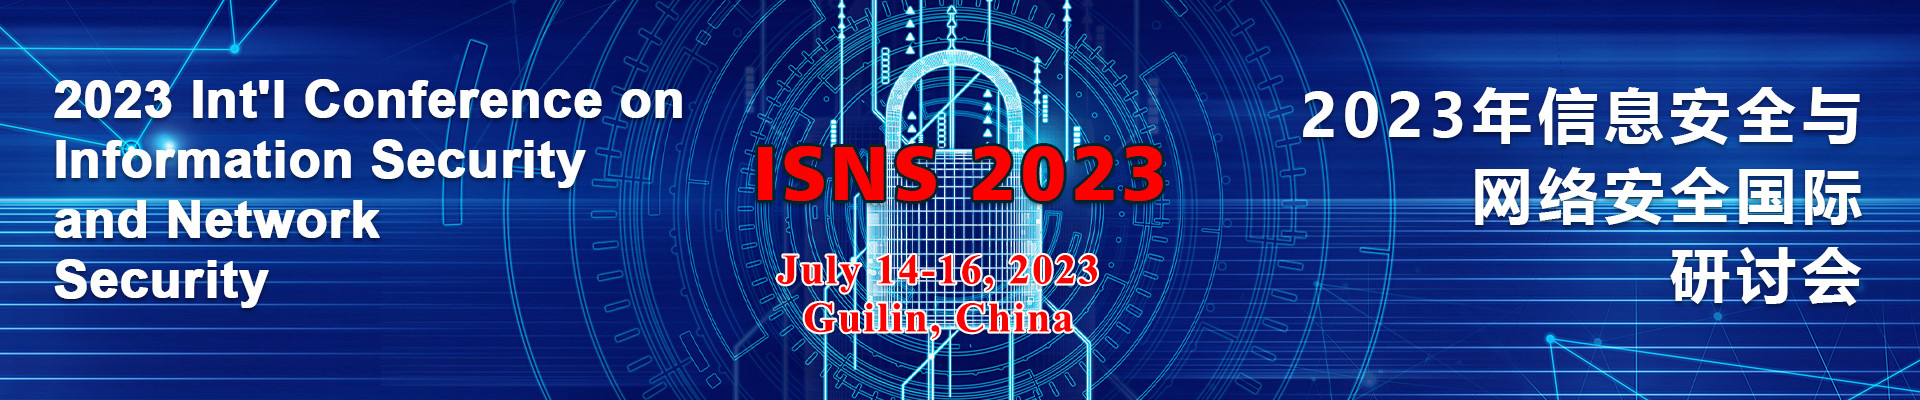 2023年信息安全与网络安全国际研讨会 (ISNS 2023) 